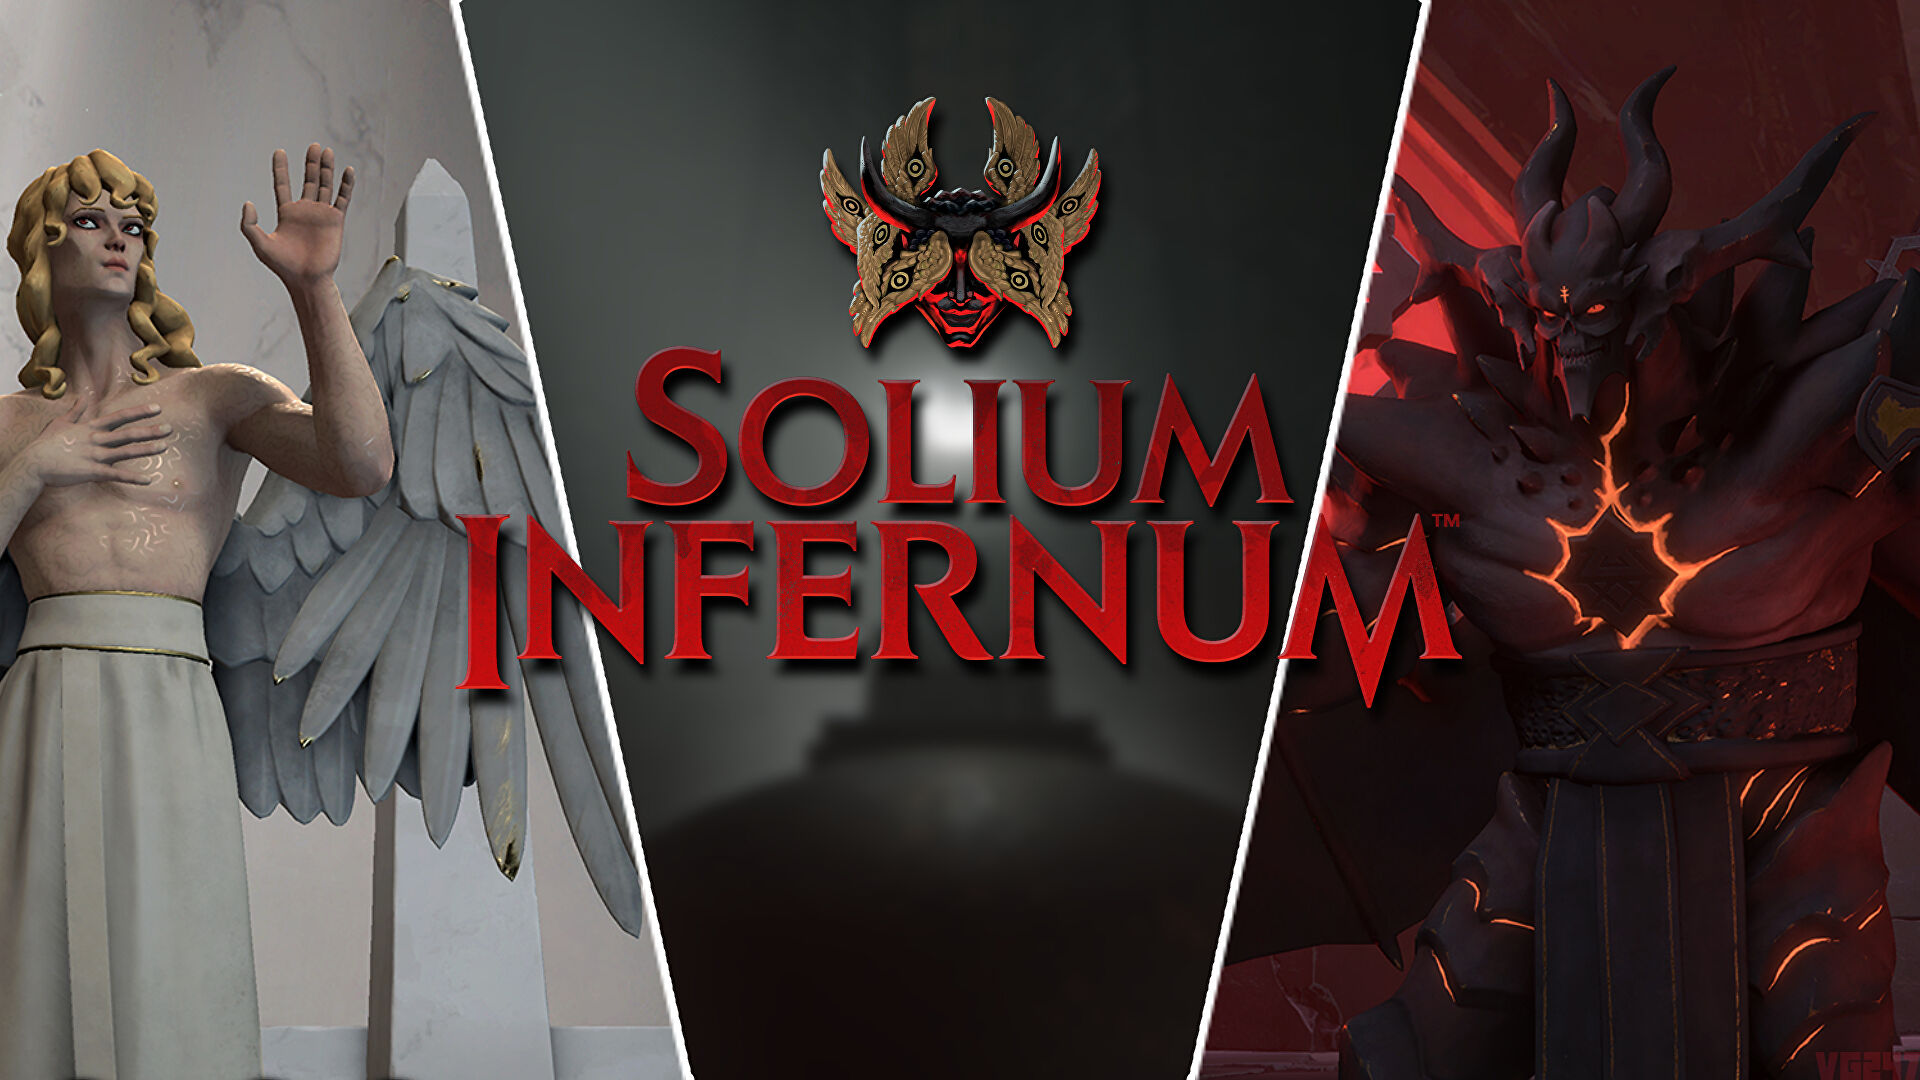 Solium Infernum PC Version Game Free Download